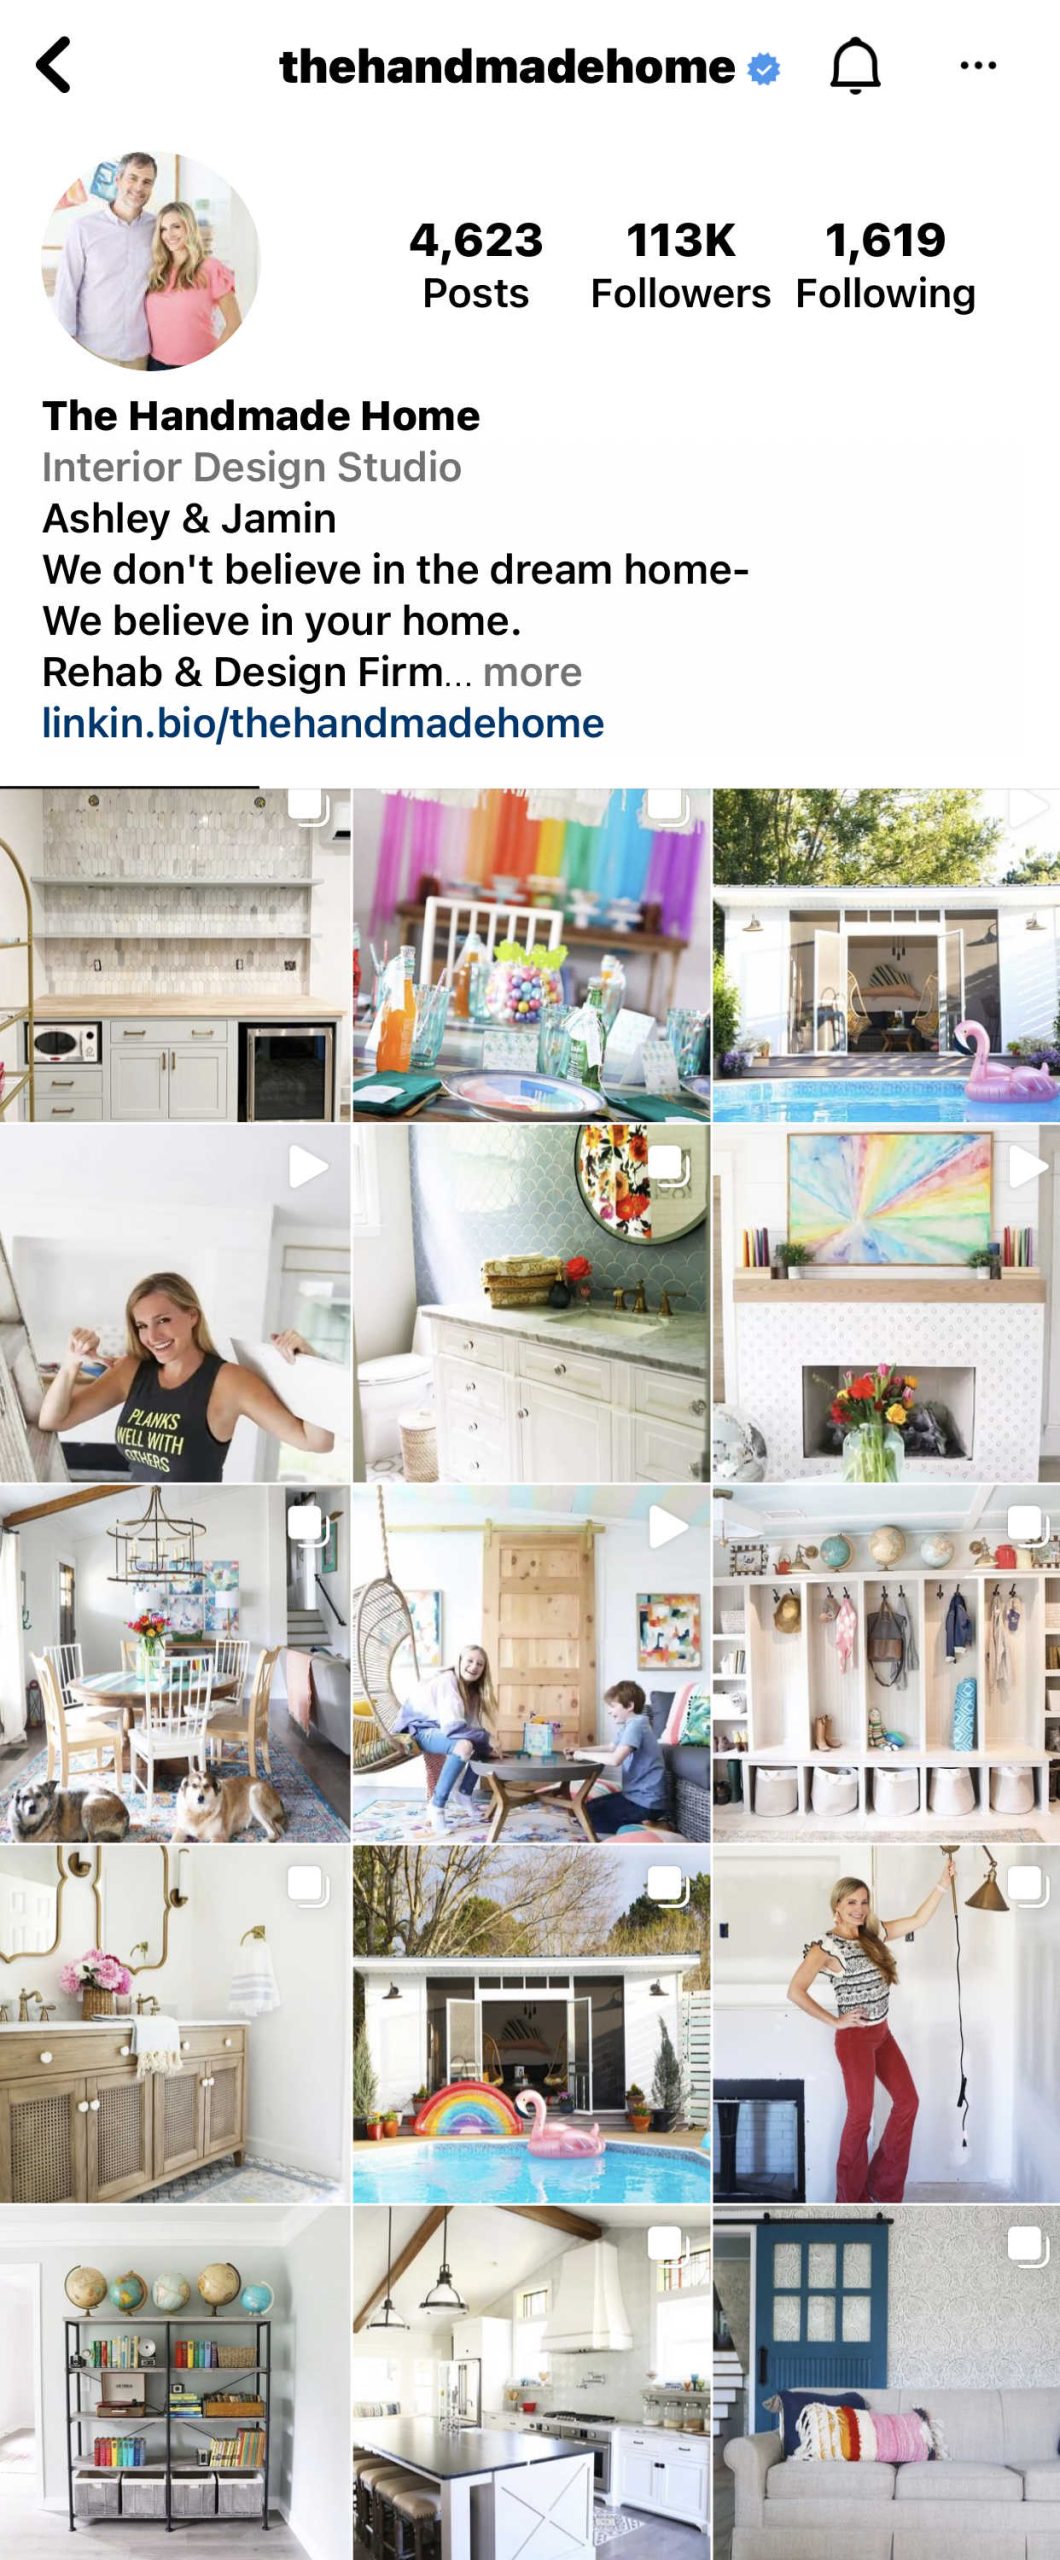 home decor inspiration - favorite instagram accounts - the handmade home